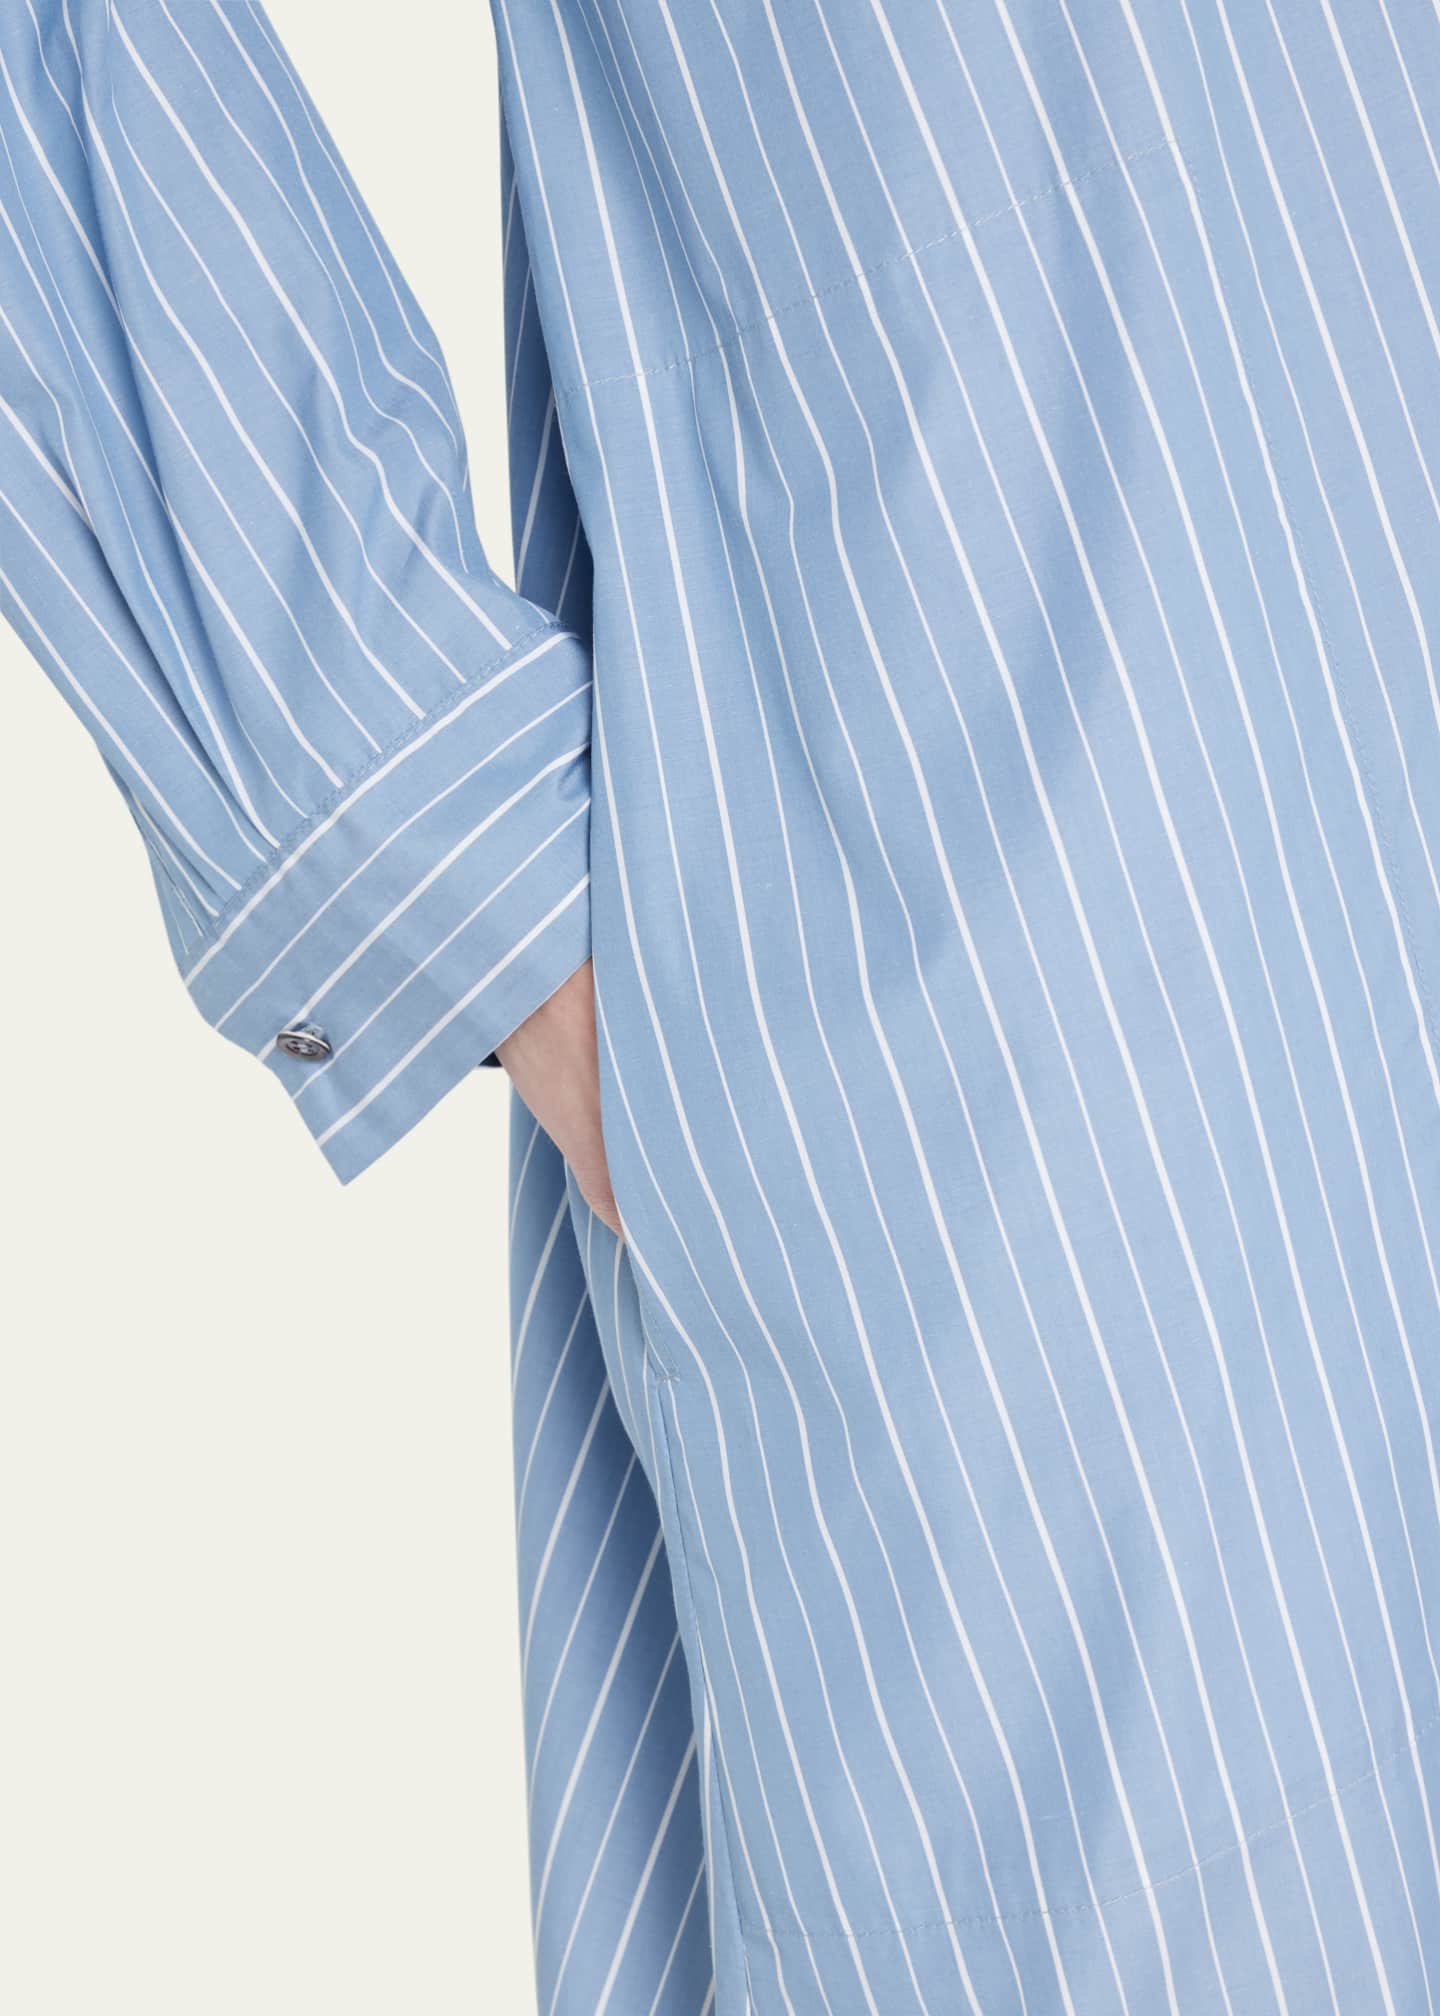 Eskandar Wide A-line Shirtdress With Collar - Bergdorf Goodman